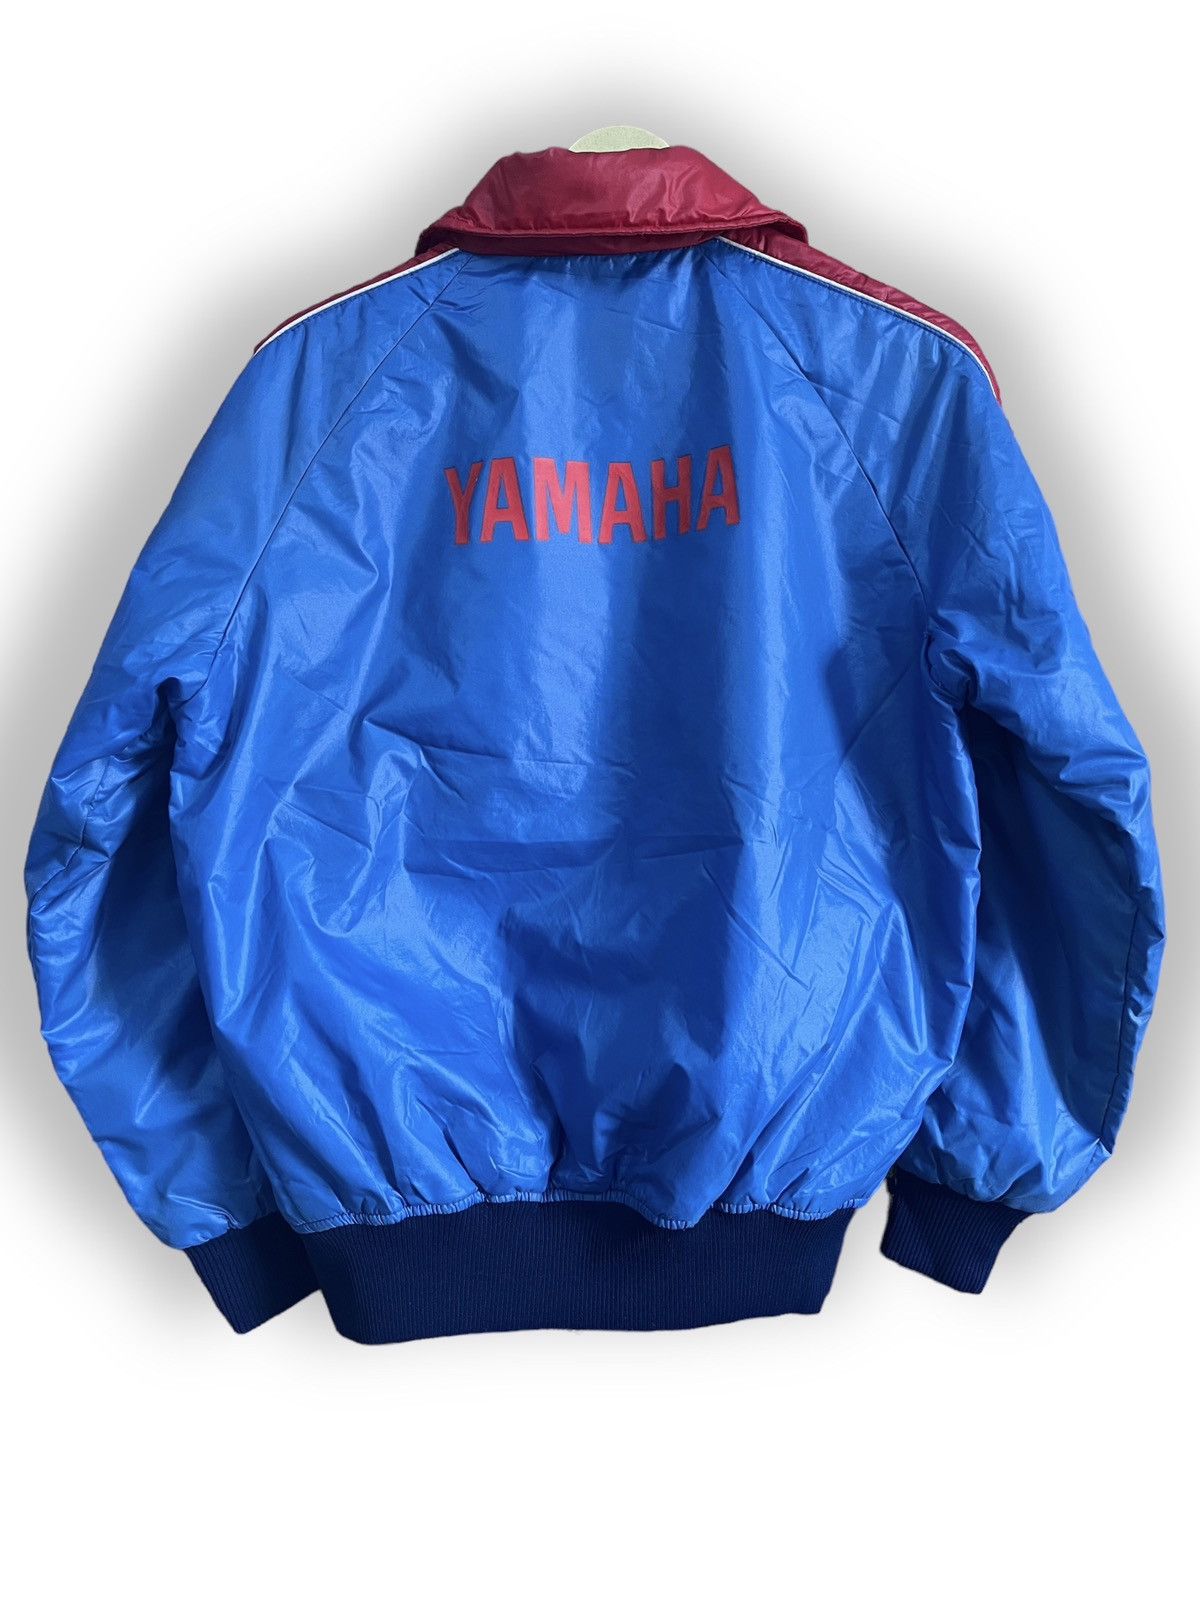 Vintage Yamaha Sweater Light Jacket Full Zipped Japan - 1